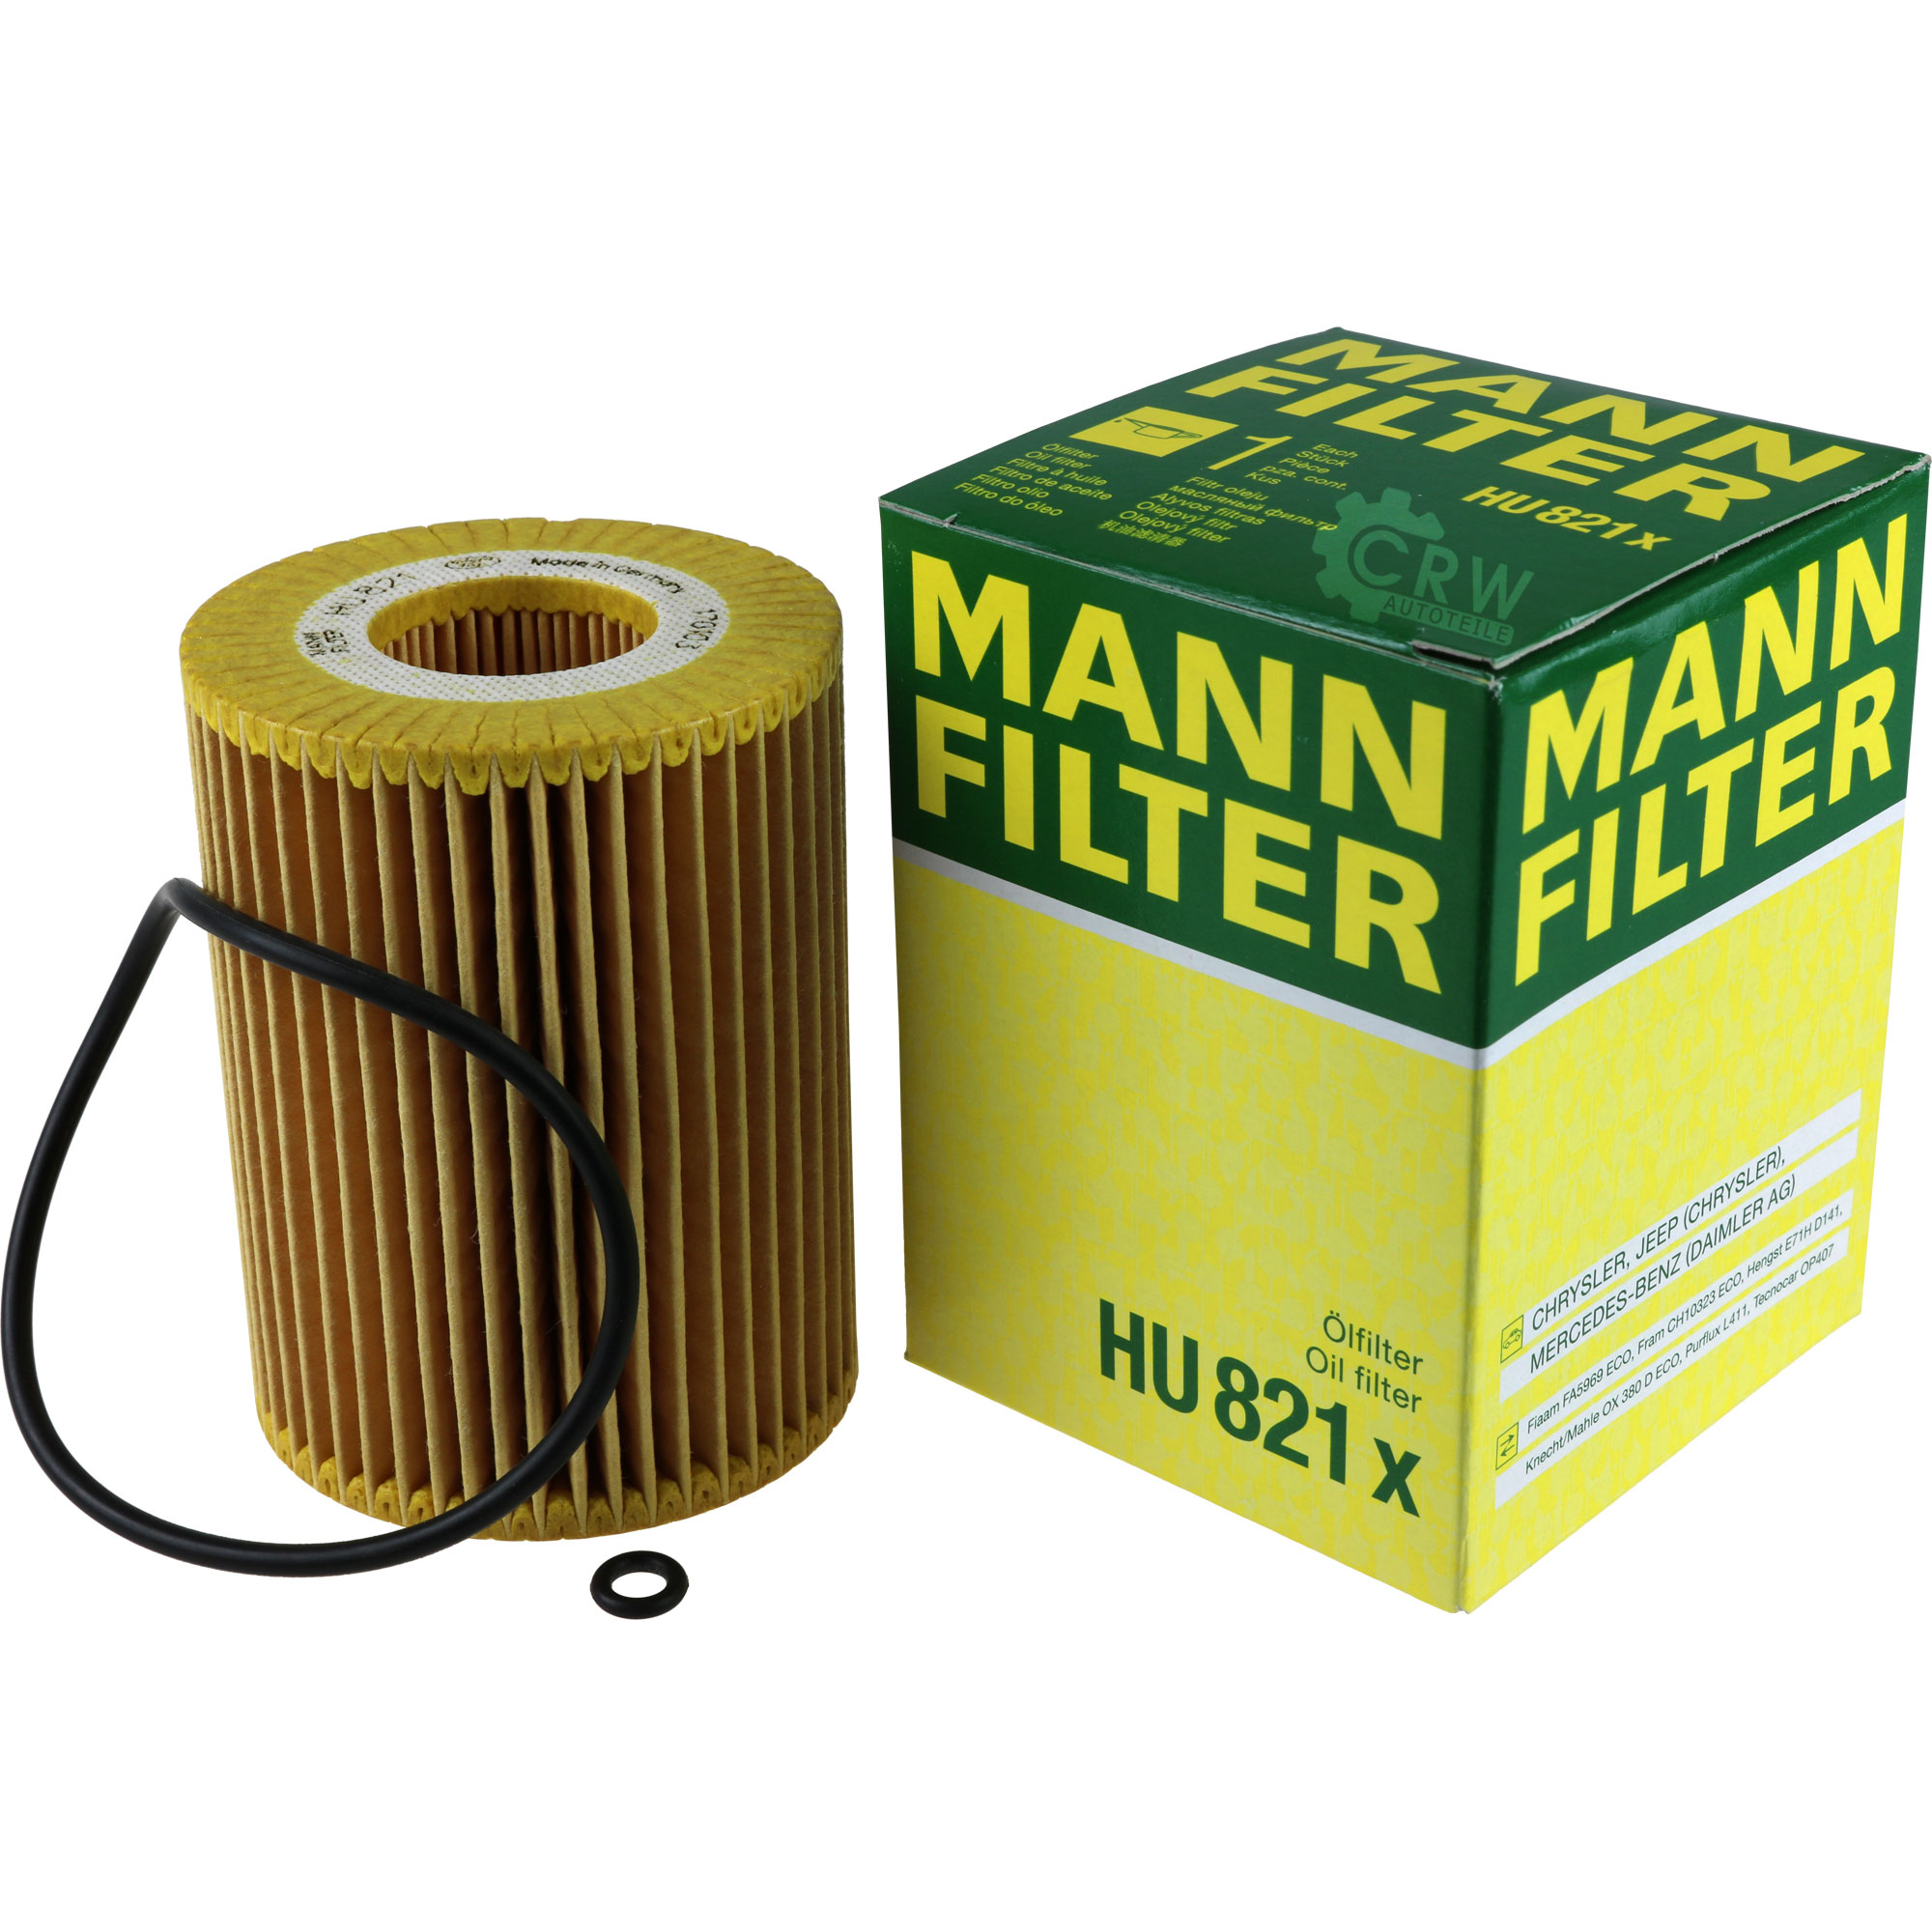 MANN-FILTER Ölfilter HU 821 x Oil Filter